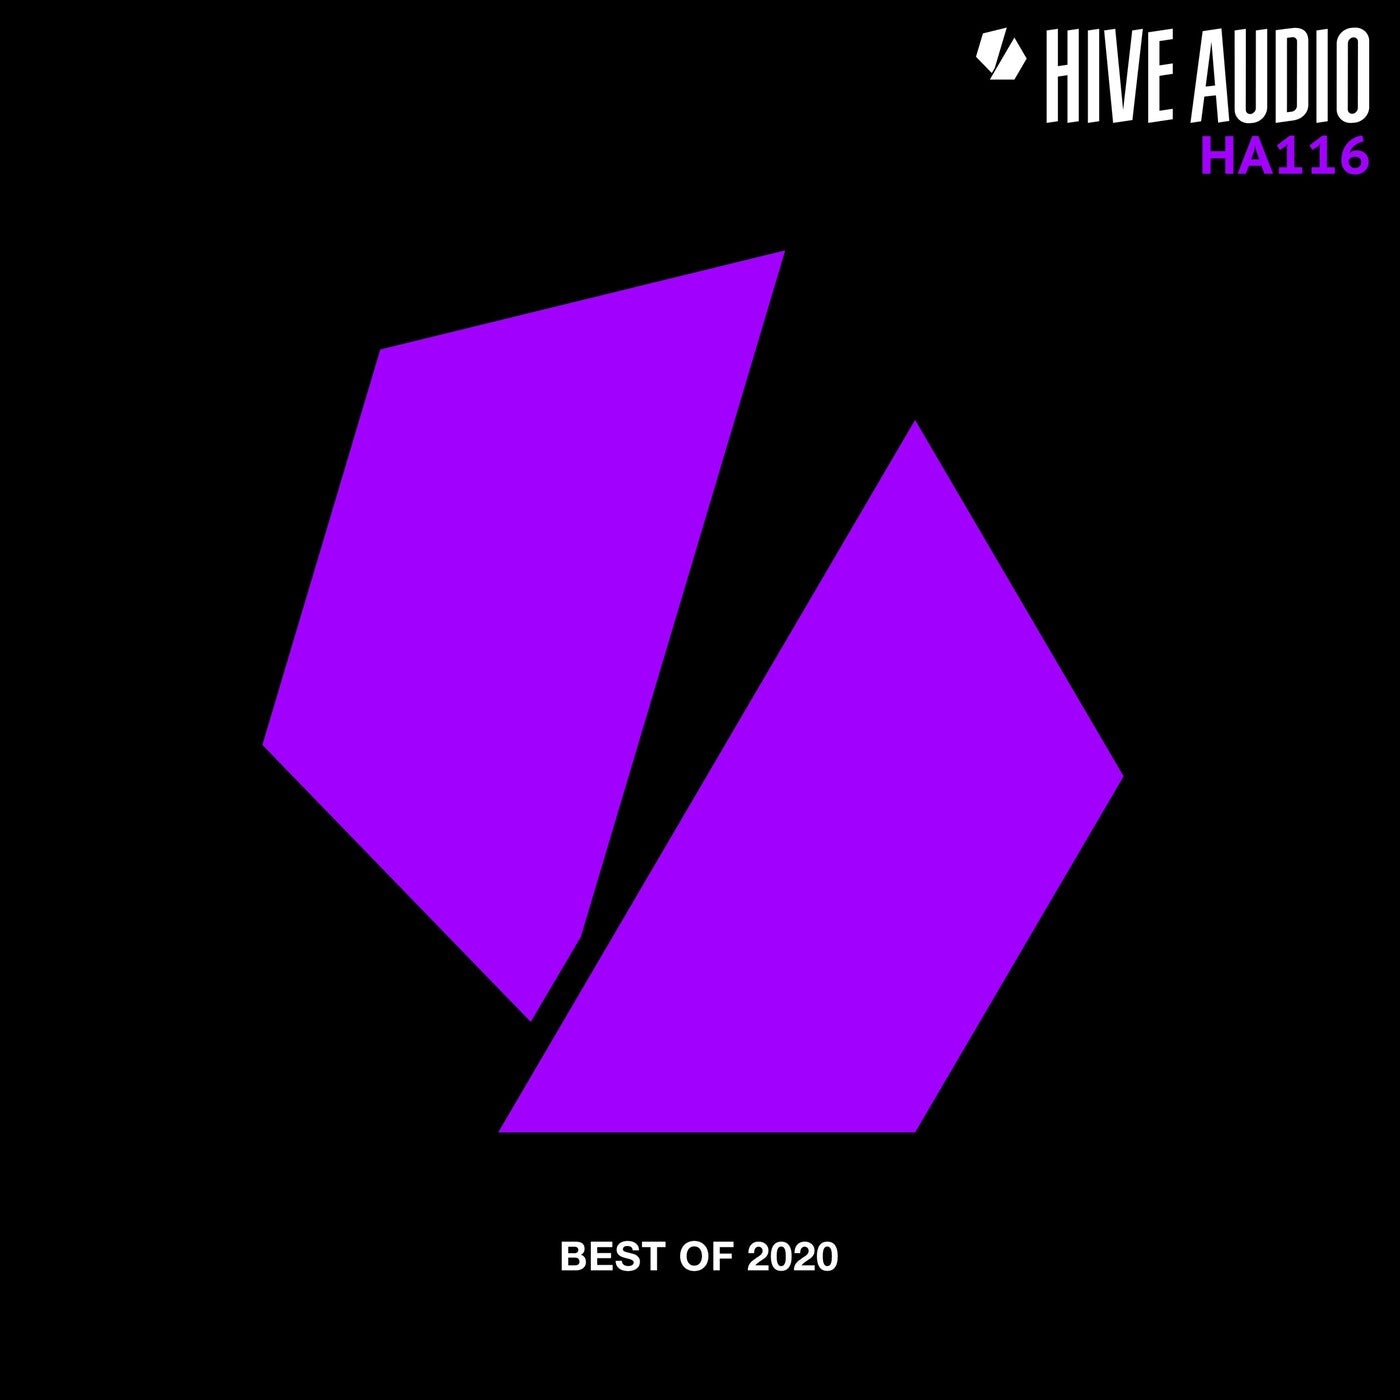 Hive Audio - Best of 2020